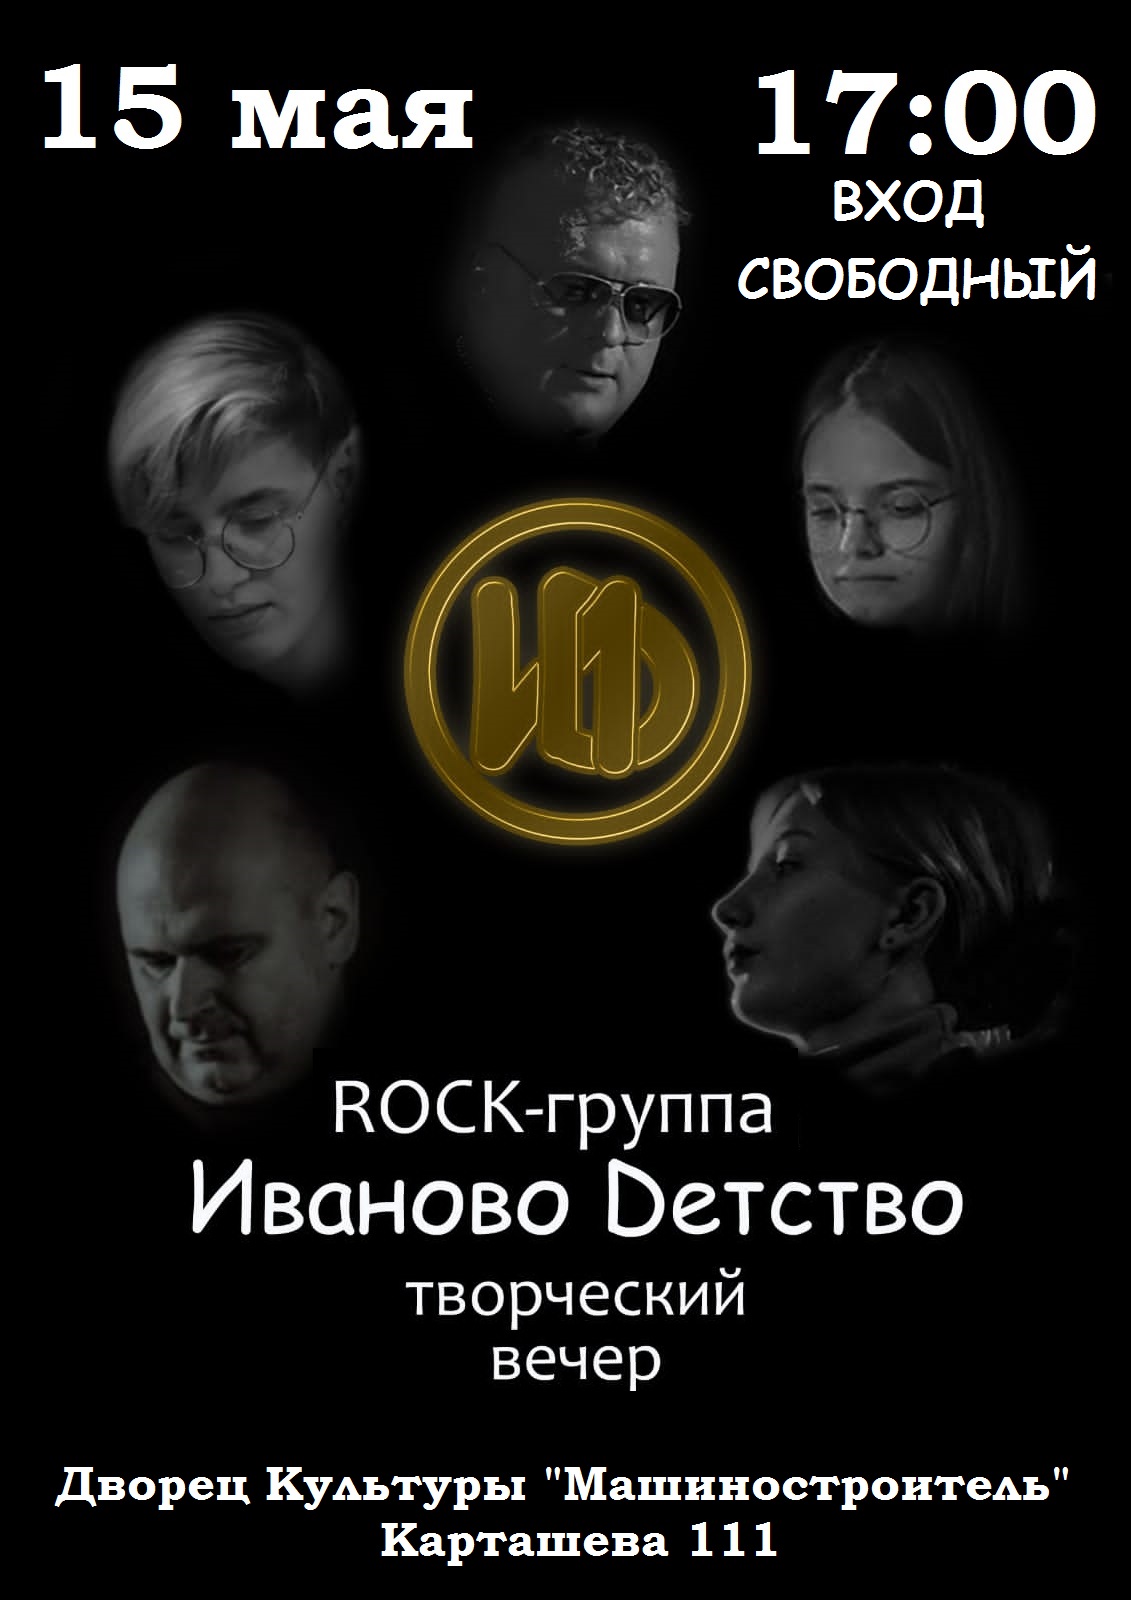 Творческий вечер рок группы "Иваново детство"